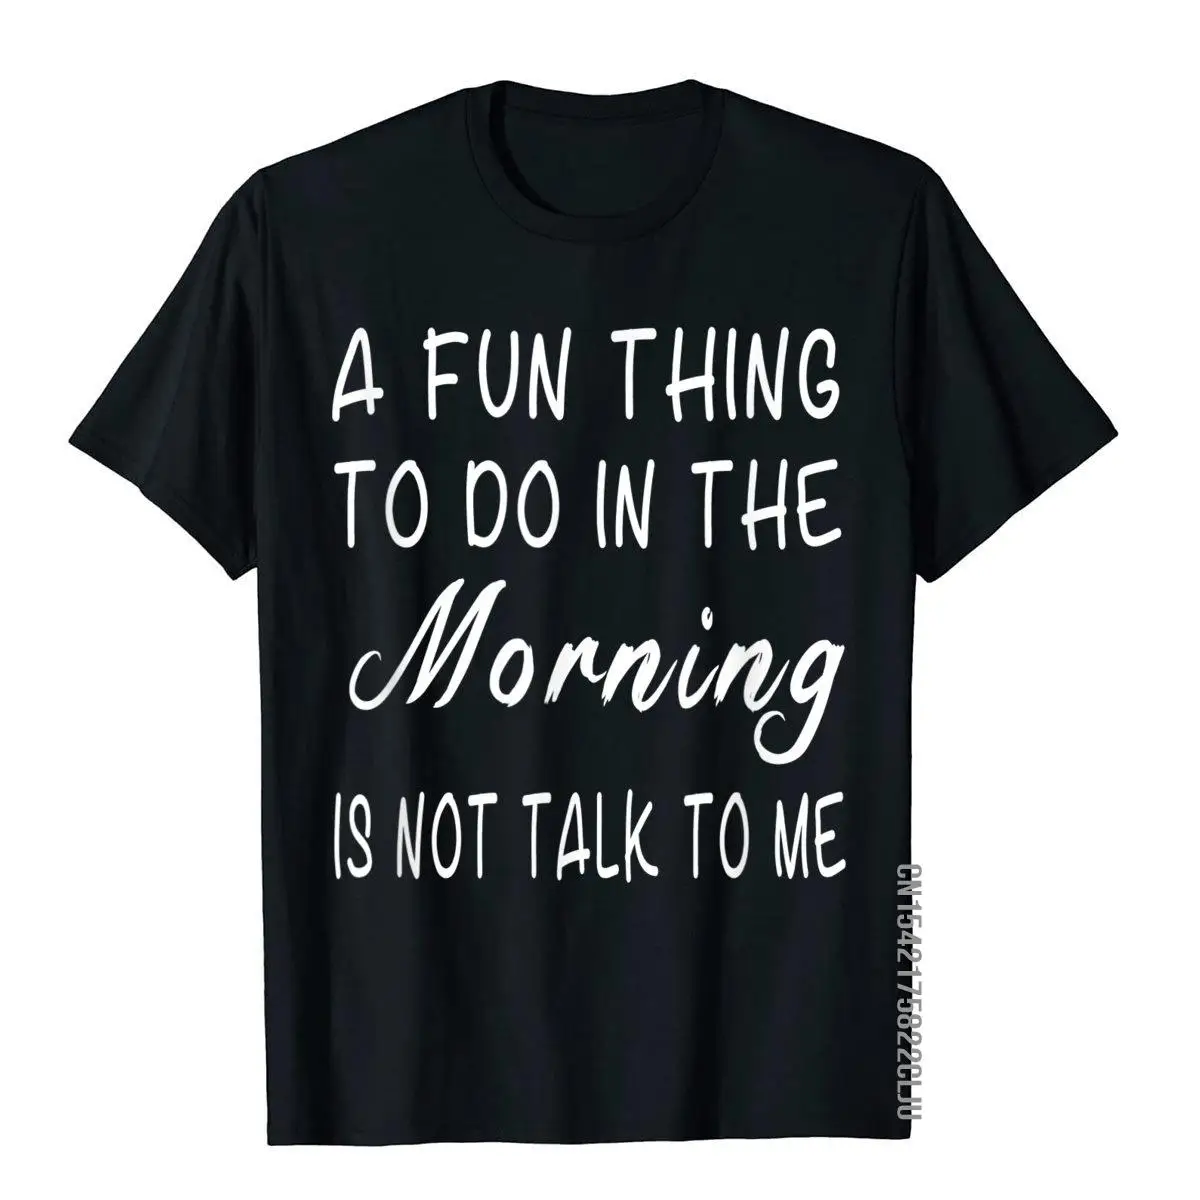 

Забавная вещь, которую нужно сделать утром-это не разговаривать со мной, футболка, Подарочные топы, рубашки, хлопковые мужские футболки в китайском стиле, новый дизайн